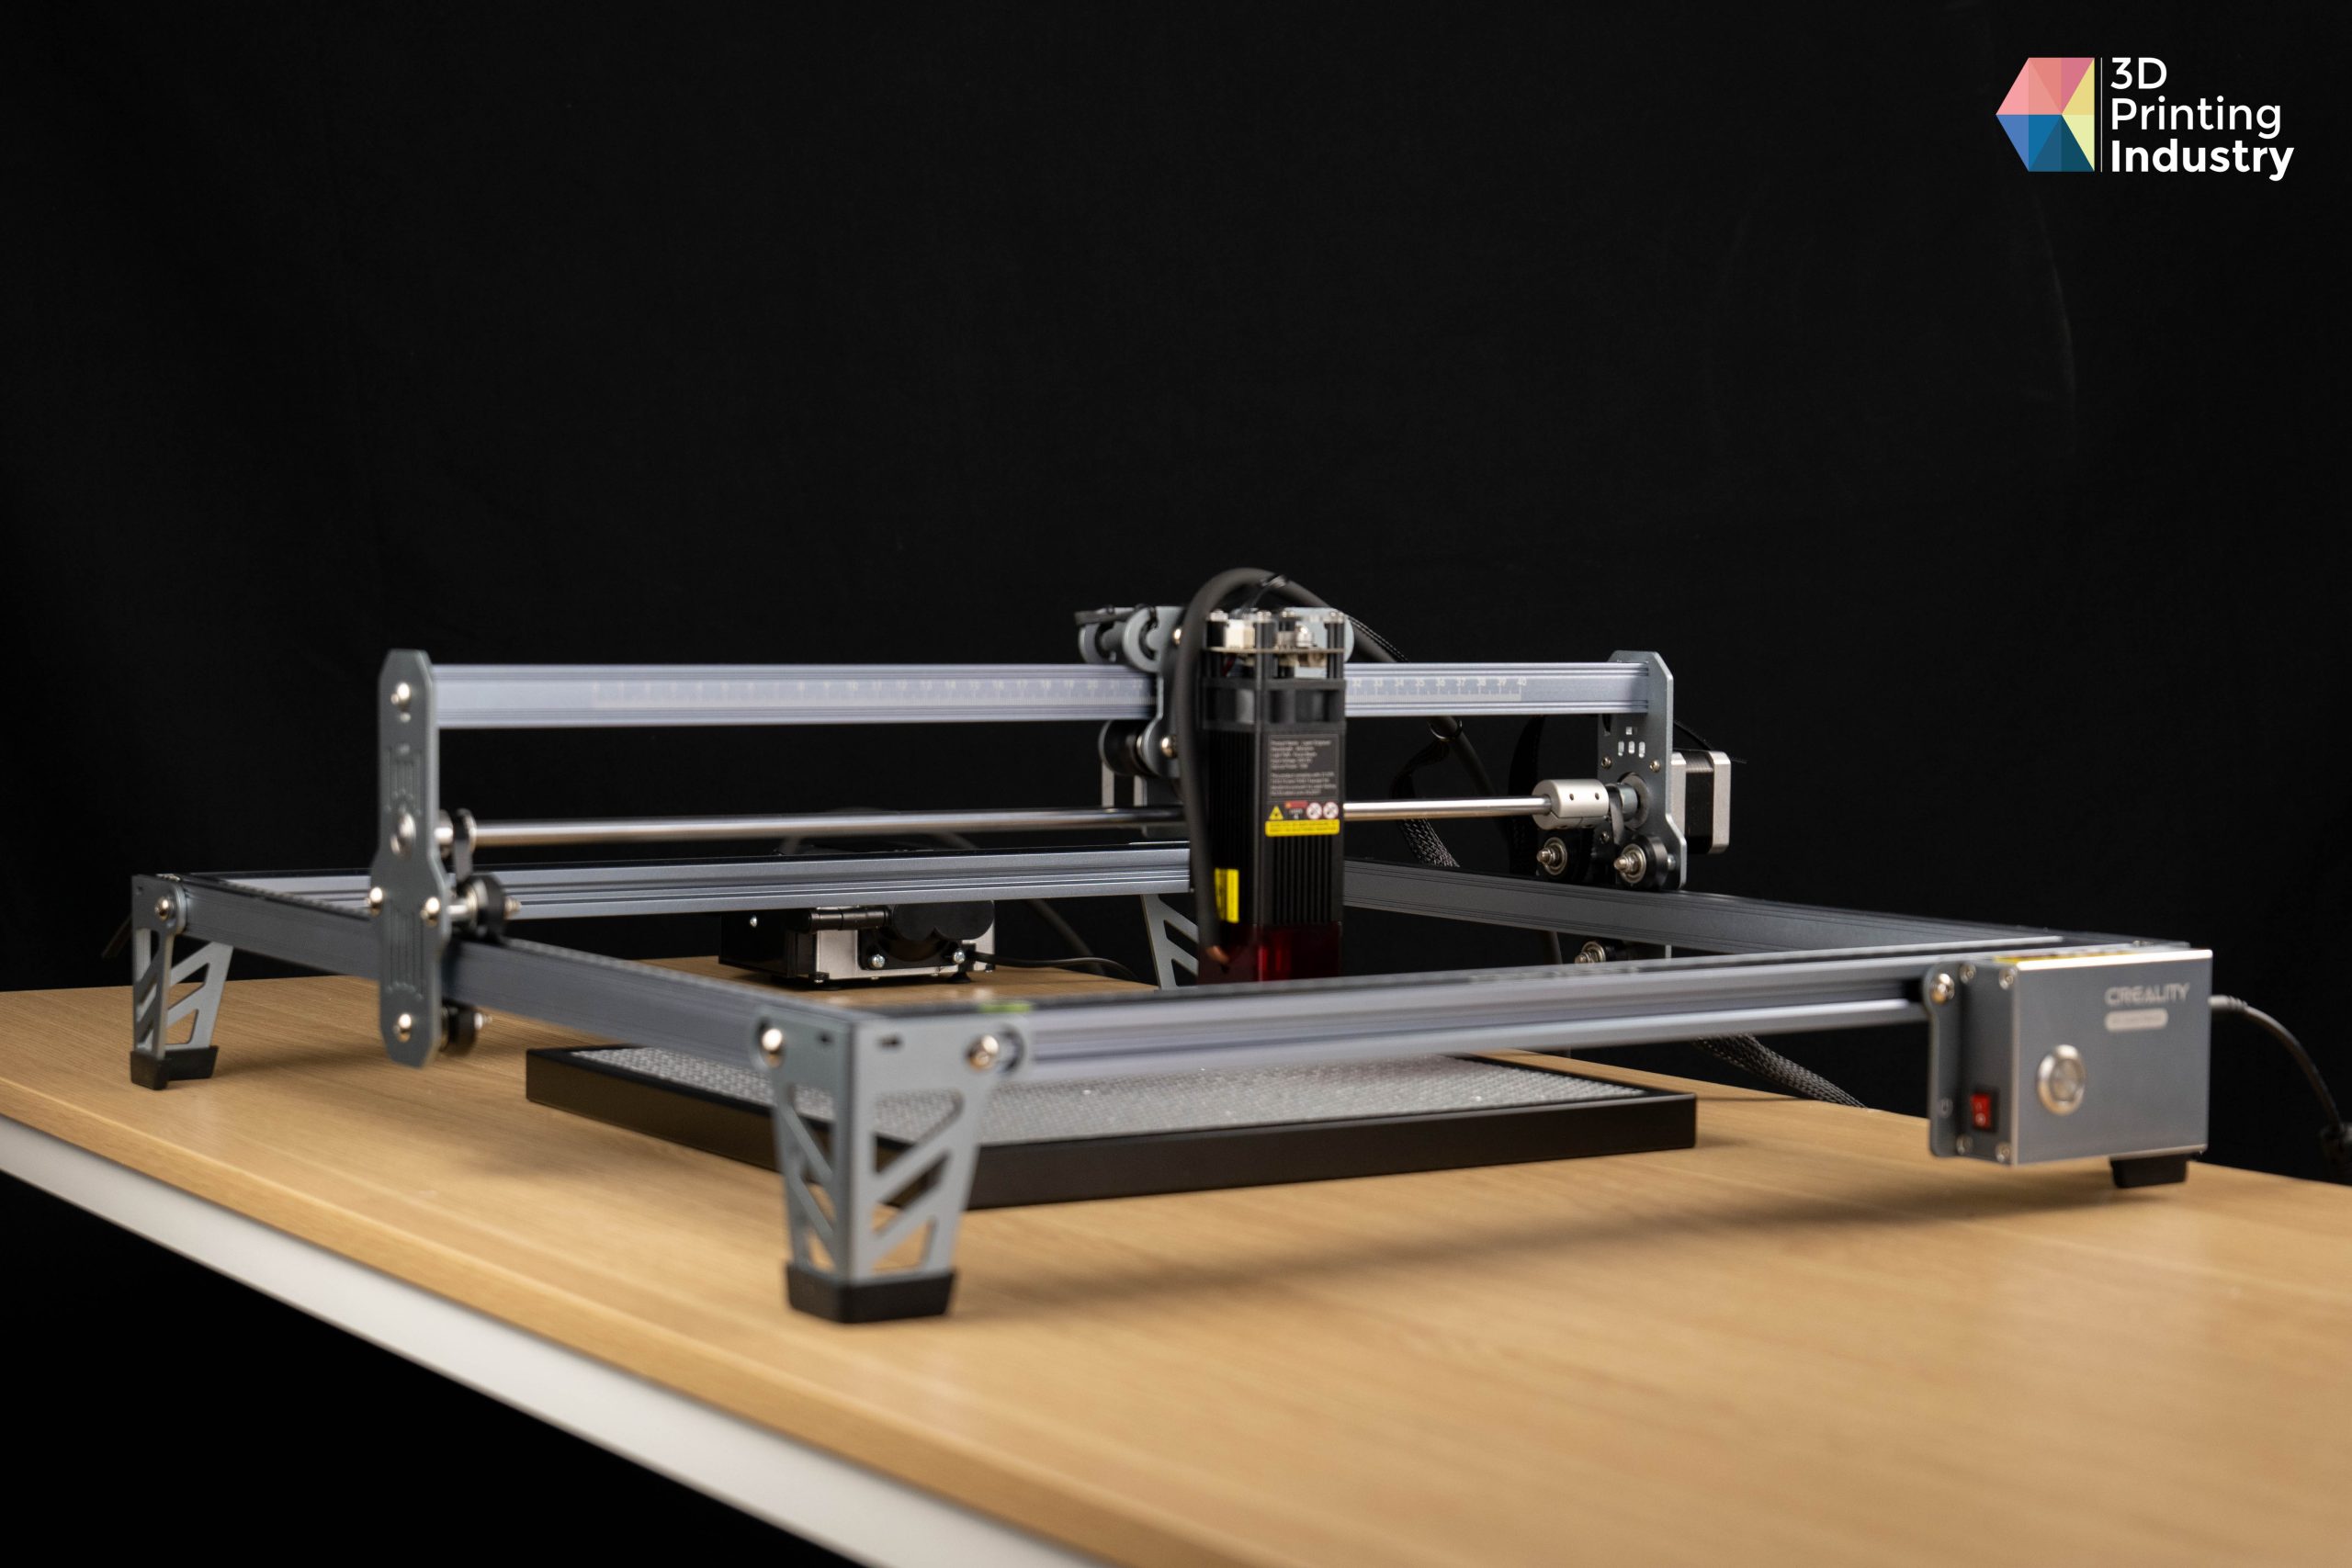 Creality CR-Laser Falcon Engraver 10W: Smooth Engraving & Cutting - Make  Tech Easier